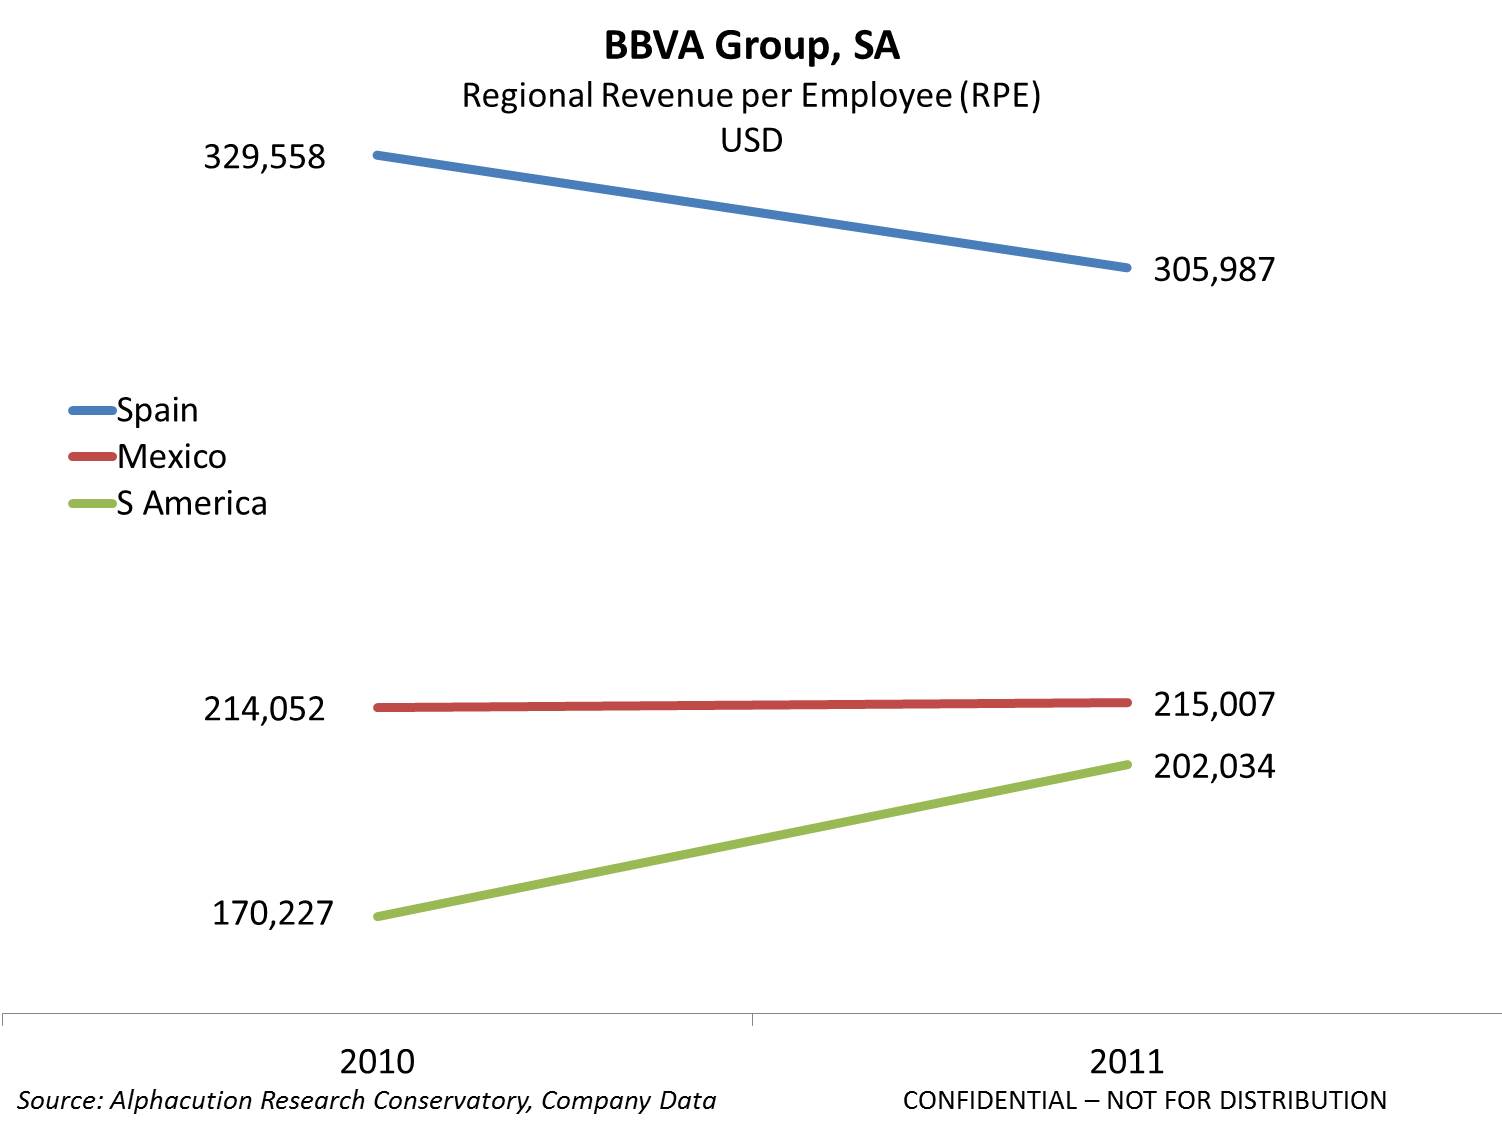 BBVA Group SA